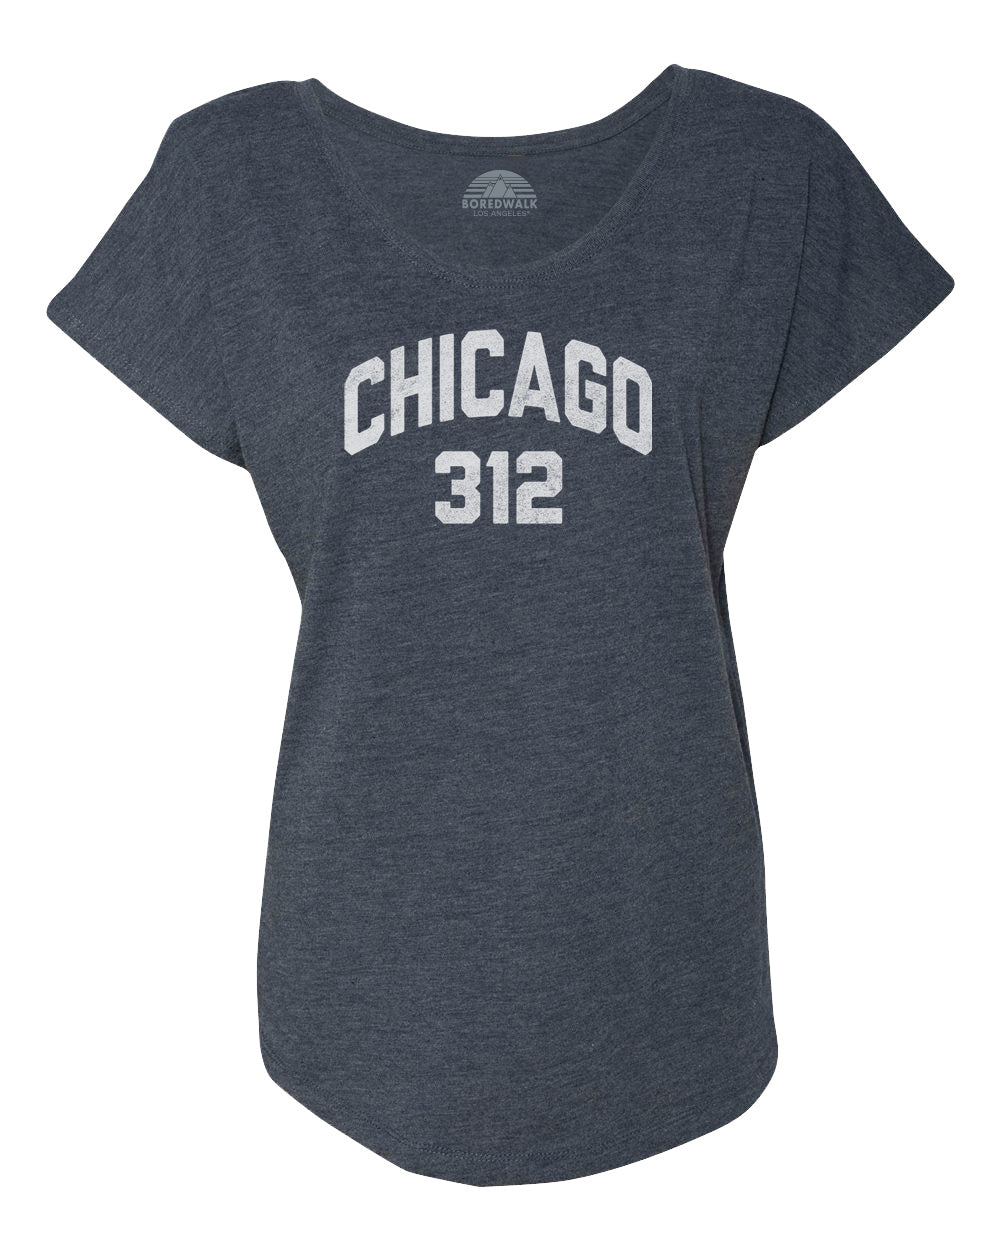 Women's Chicago 312 Area Code Scoop Neck T-Shirt